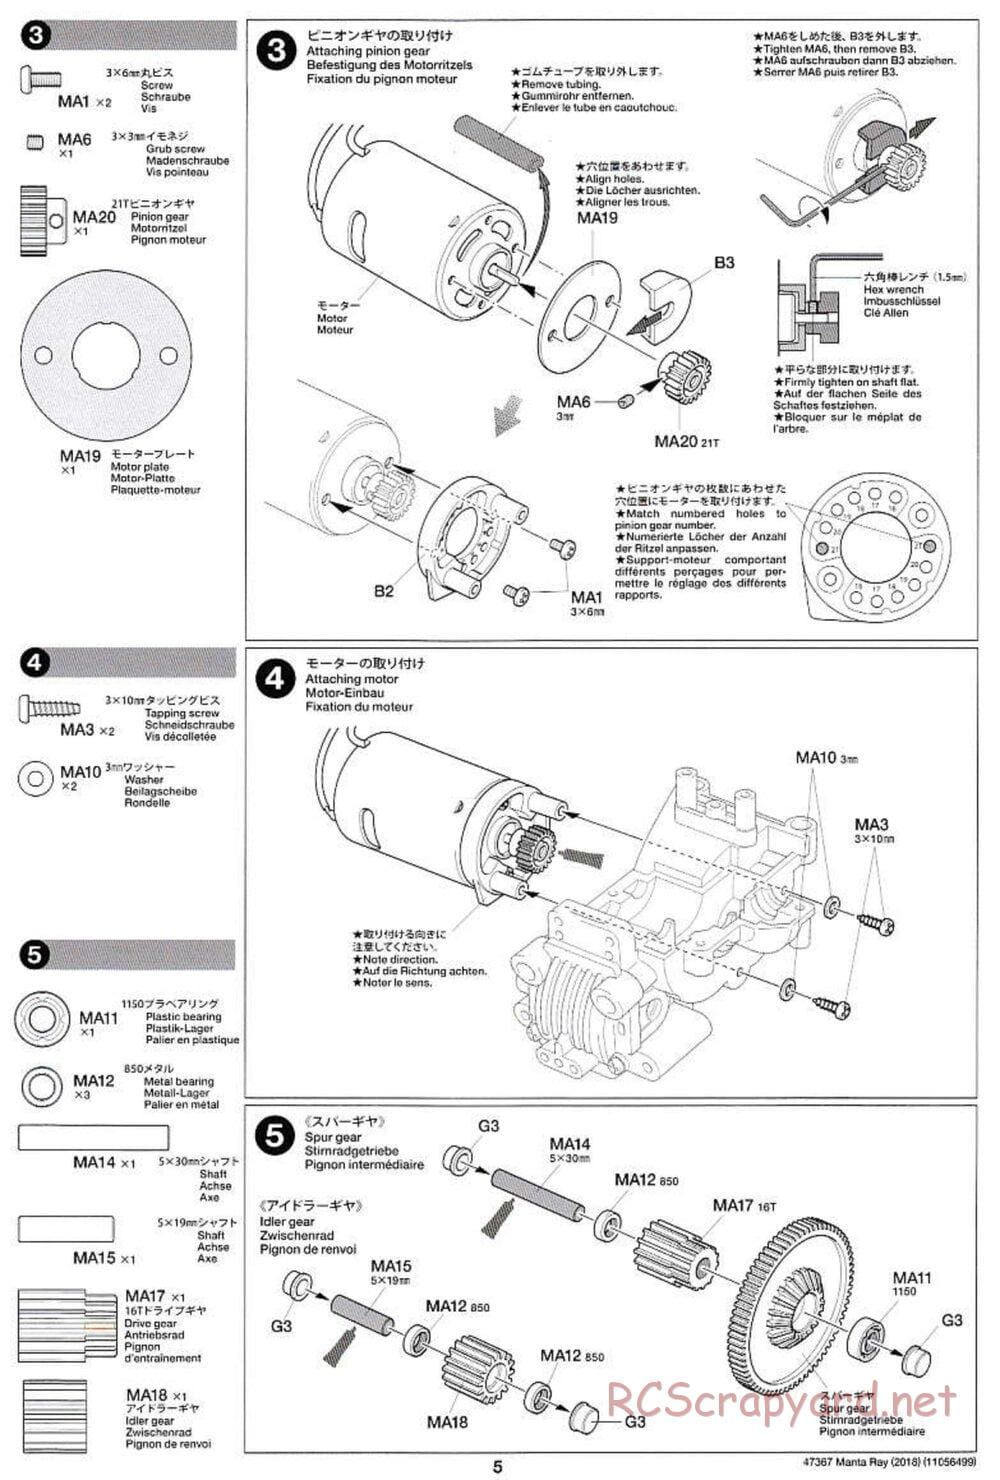 Tamiya - Manta Ray 2018 - DF-01 Chassis - Manual - Page 5